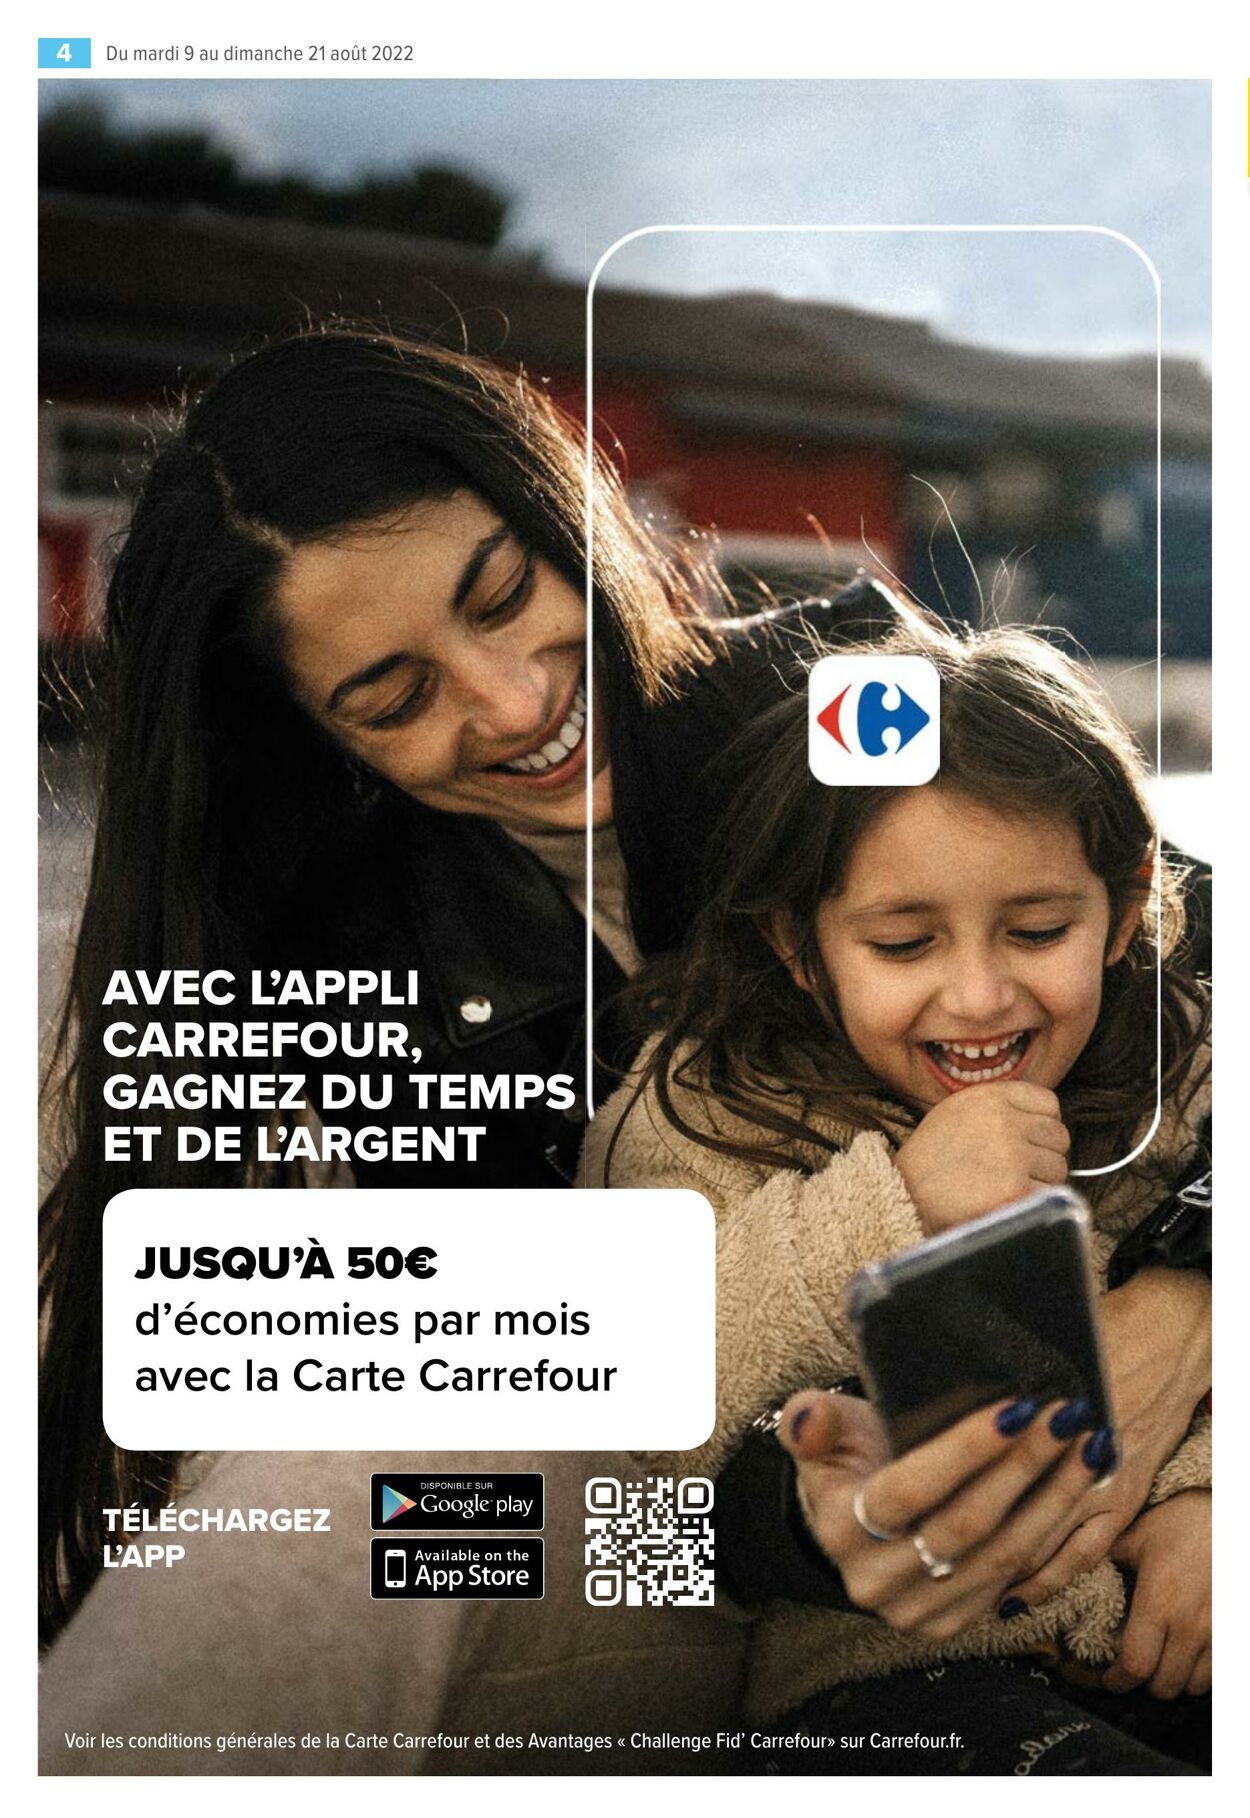 Catalogue Carrefour 09.08.2022 - 21.08.2022